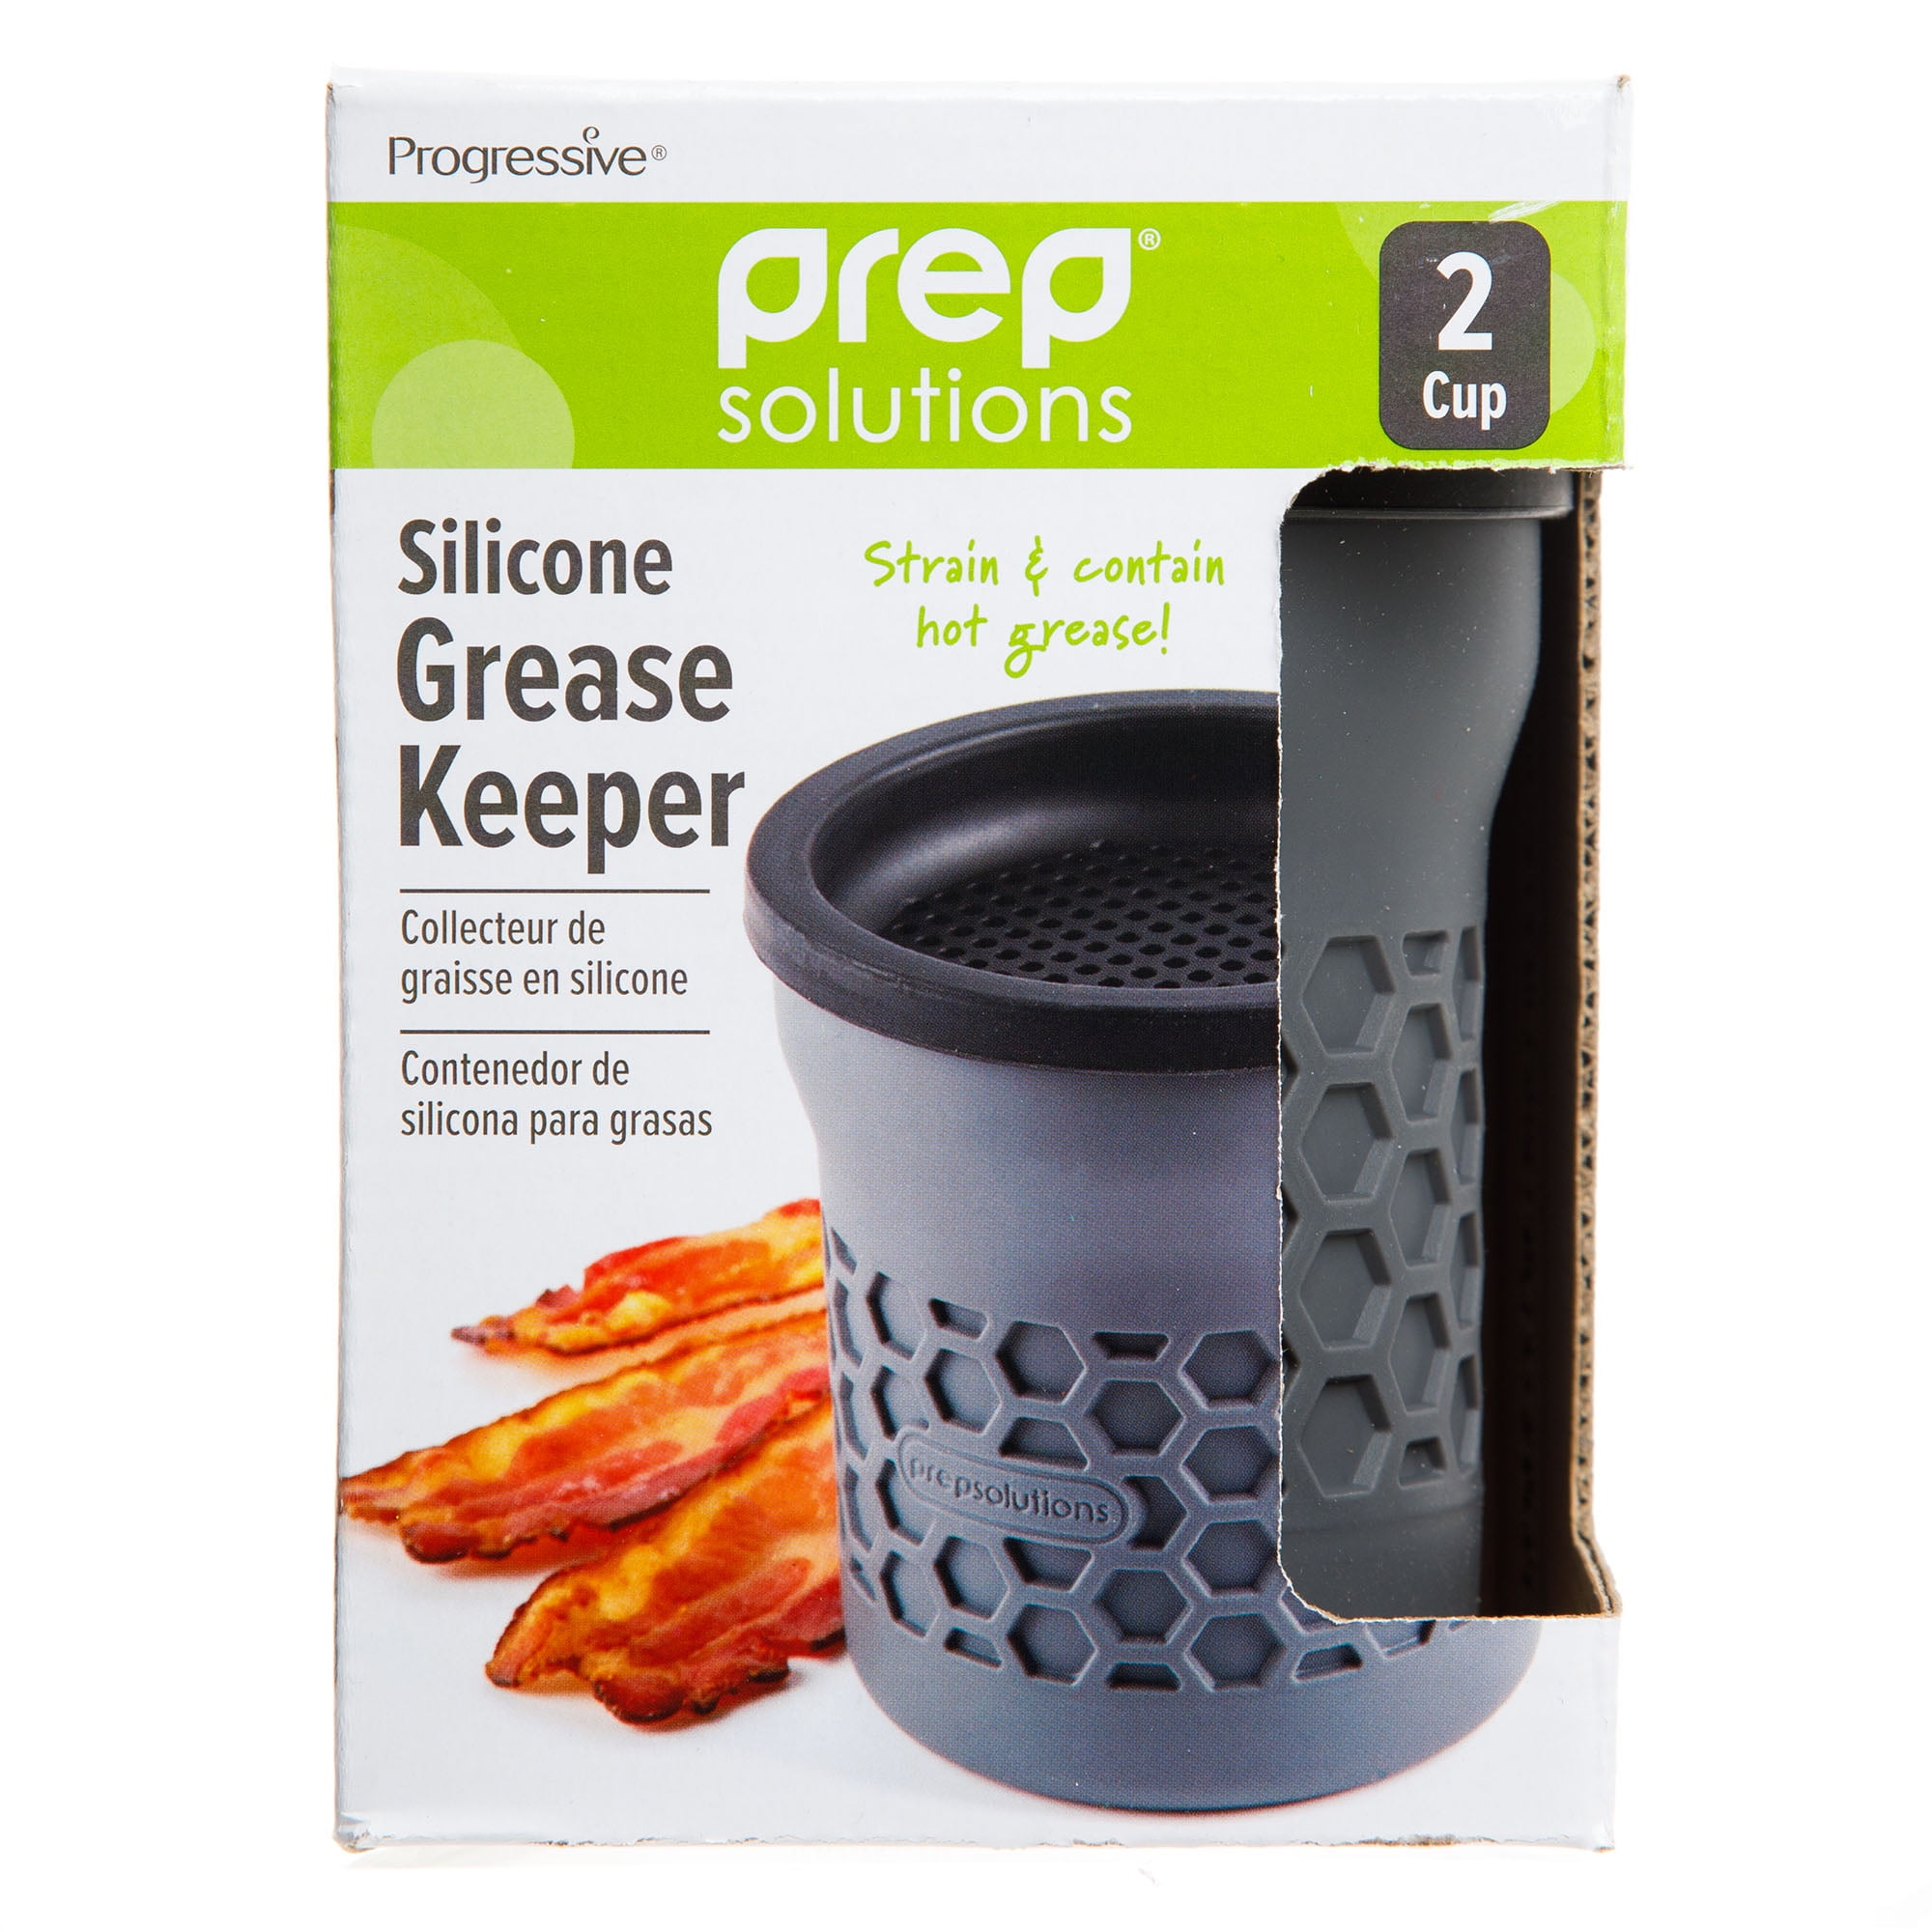 Progressive Prep Solutions Silicone Grease Keeper — Las Cosas Kitchen Shoppe